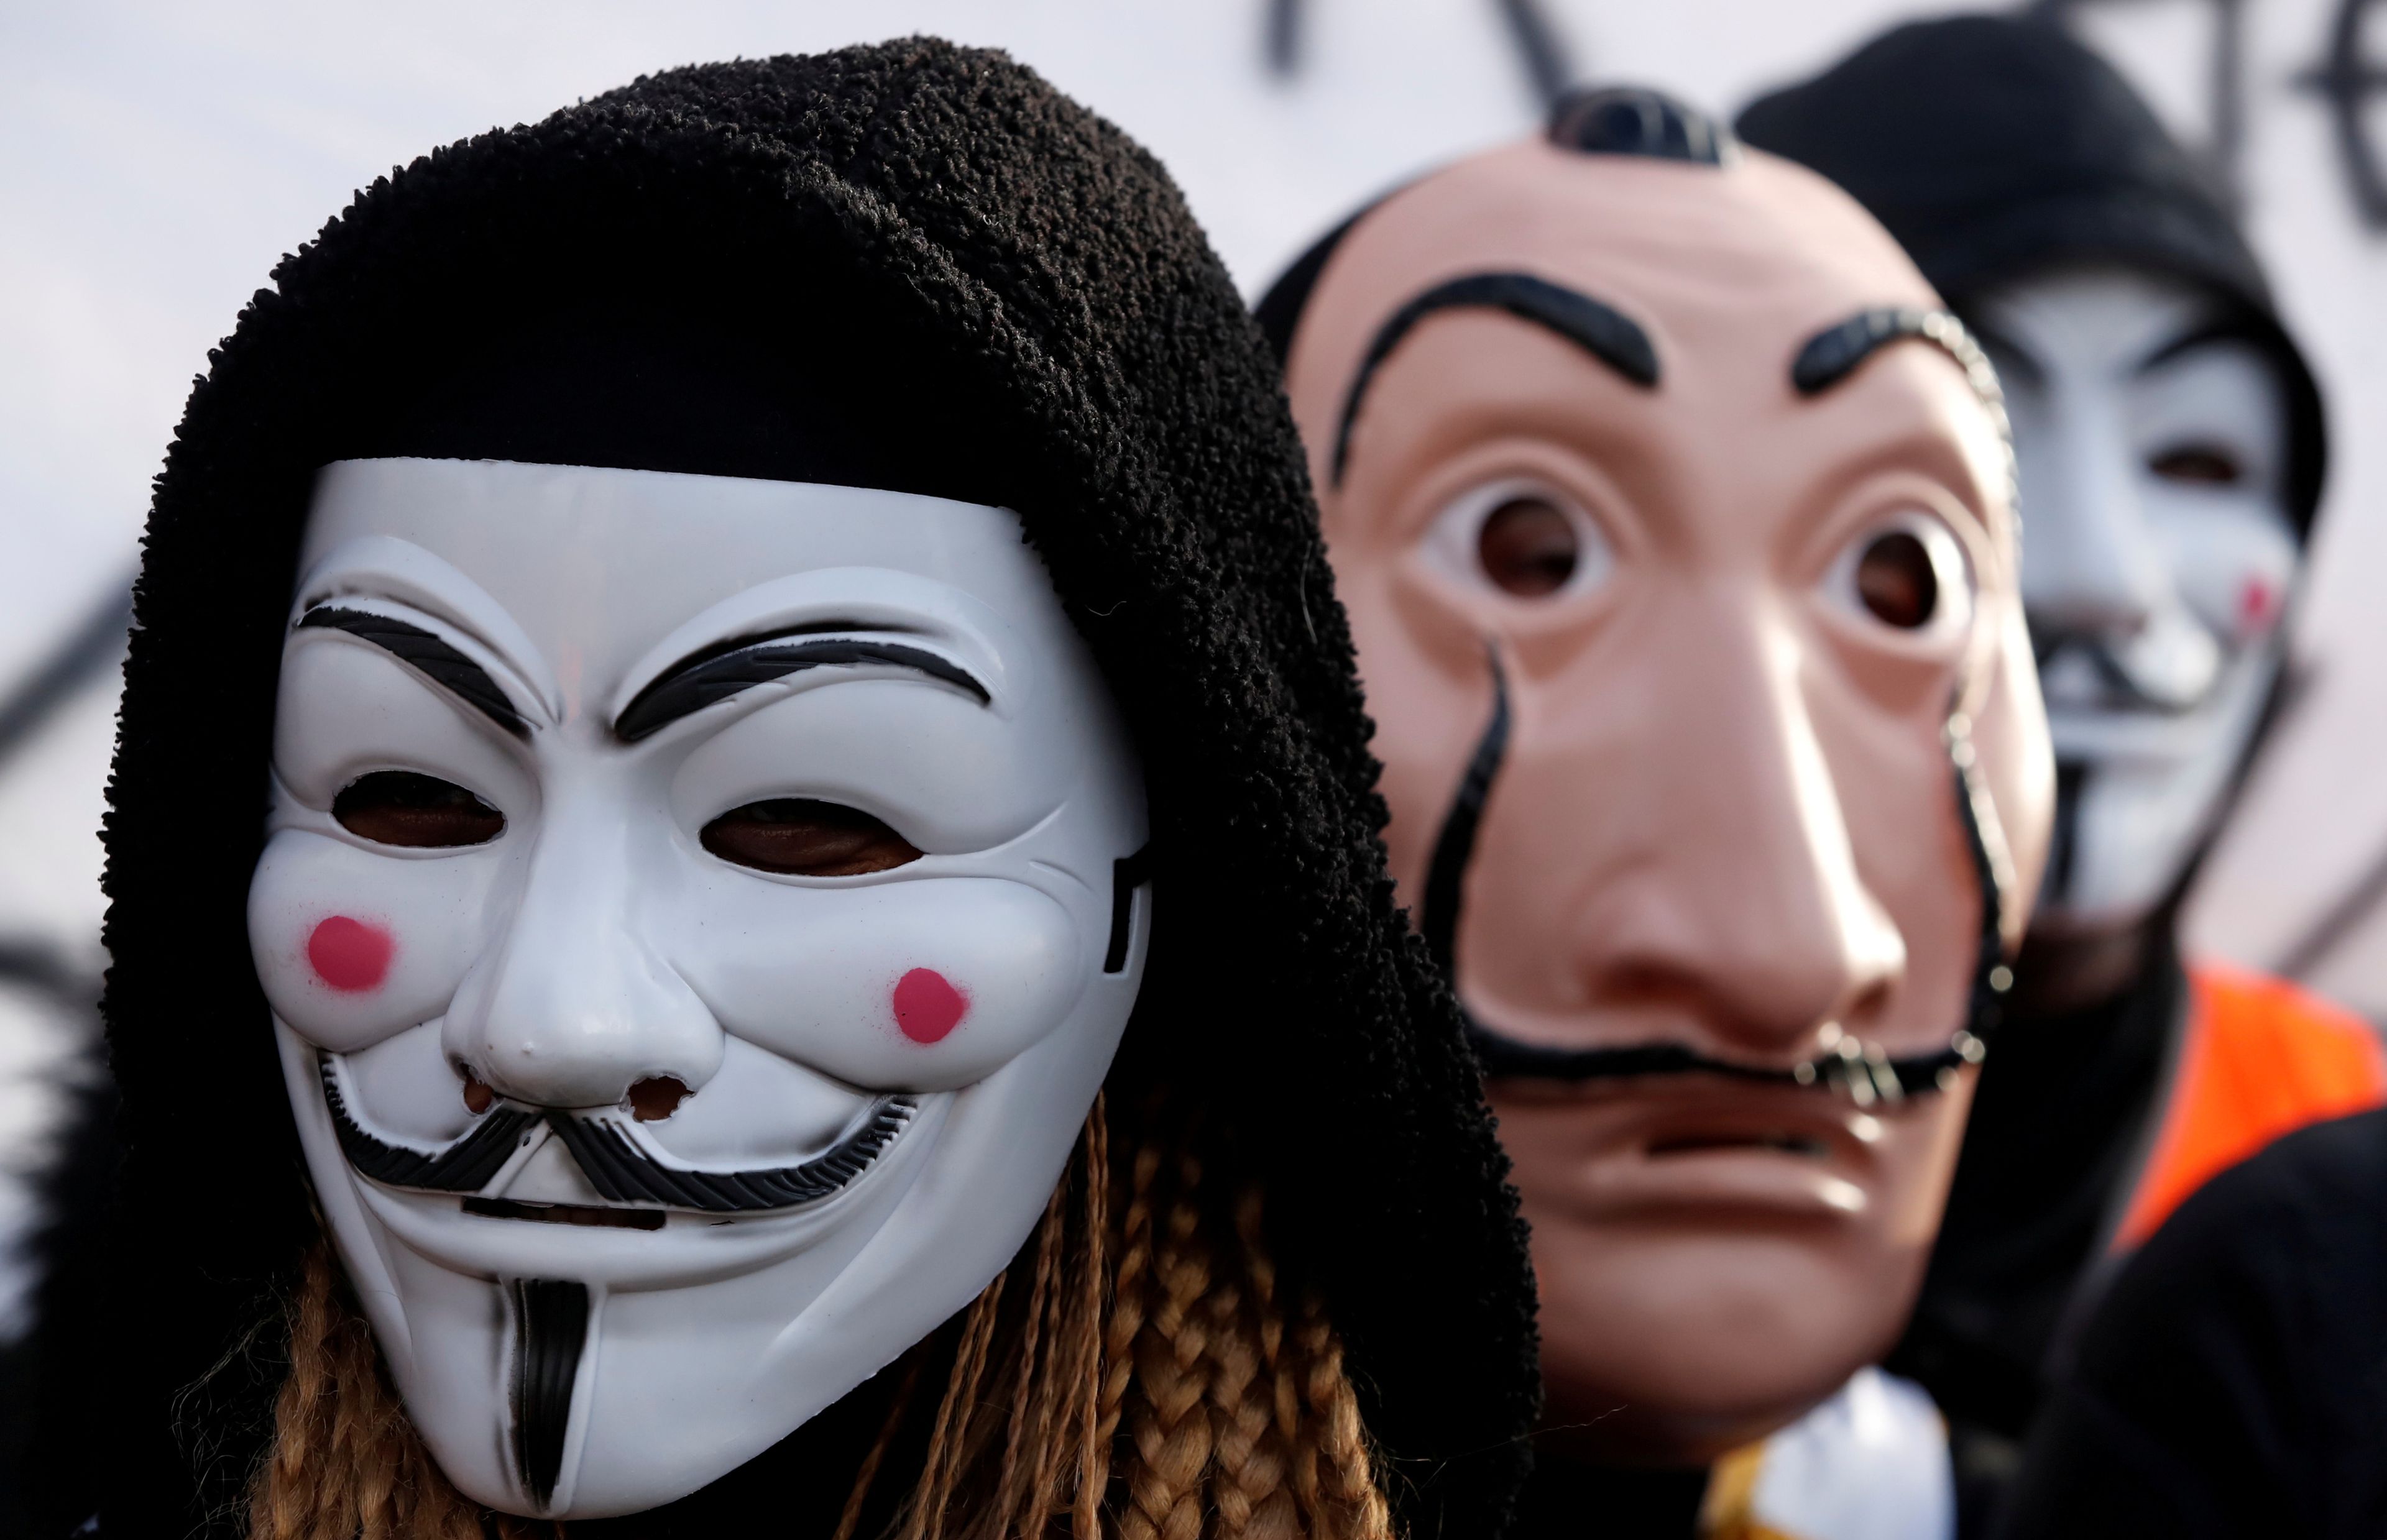 Manifestantes con máscaras de Guy Fawkes o Dalí, en referencia a V de Vendeta o La Casa de Papel.